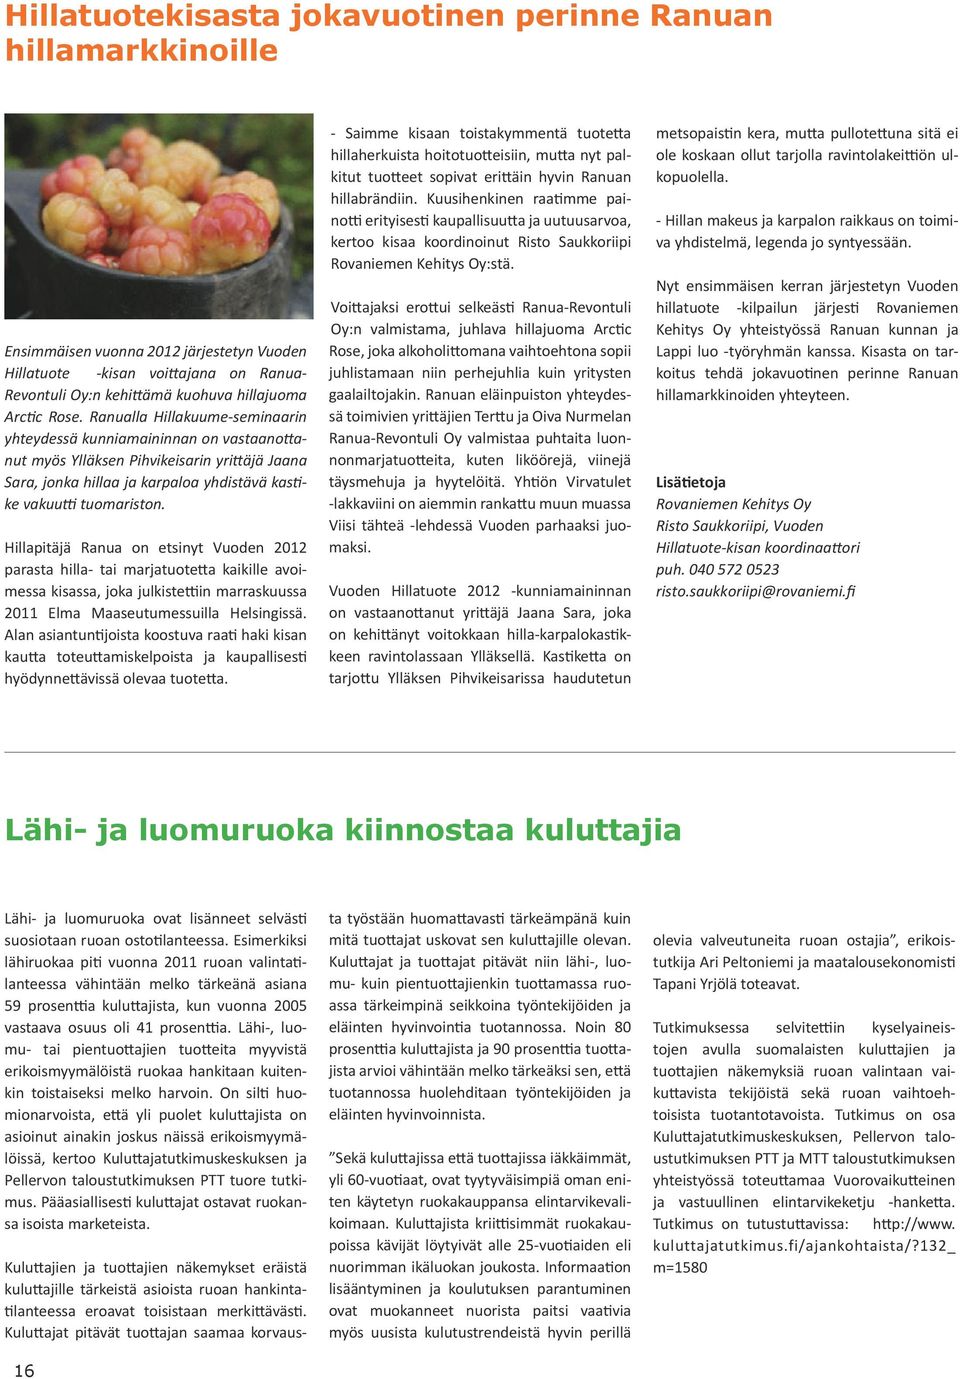 Hillapitäjä Ranua on etsinyt Vuoden 2012 parasta hilla- tai marjatuotetta kaikille avoimessa kisassa, joka julkistettiin marraskuussa 2011 Elma Maaseutumessuilla Helsingissä.